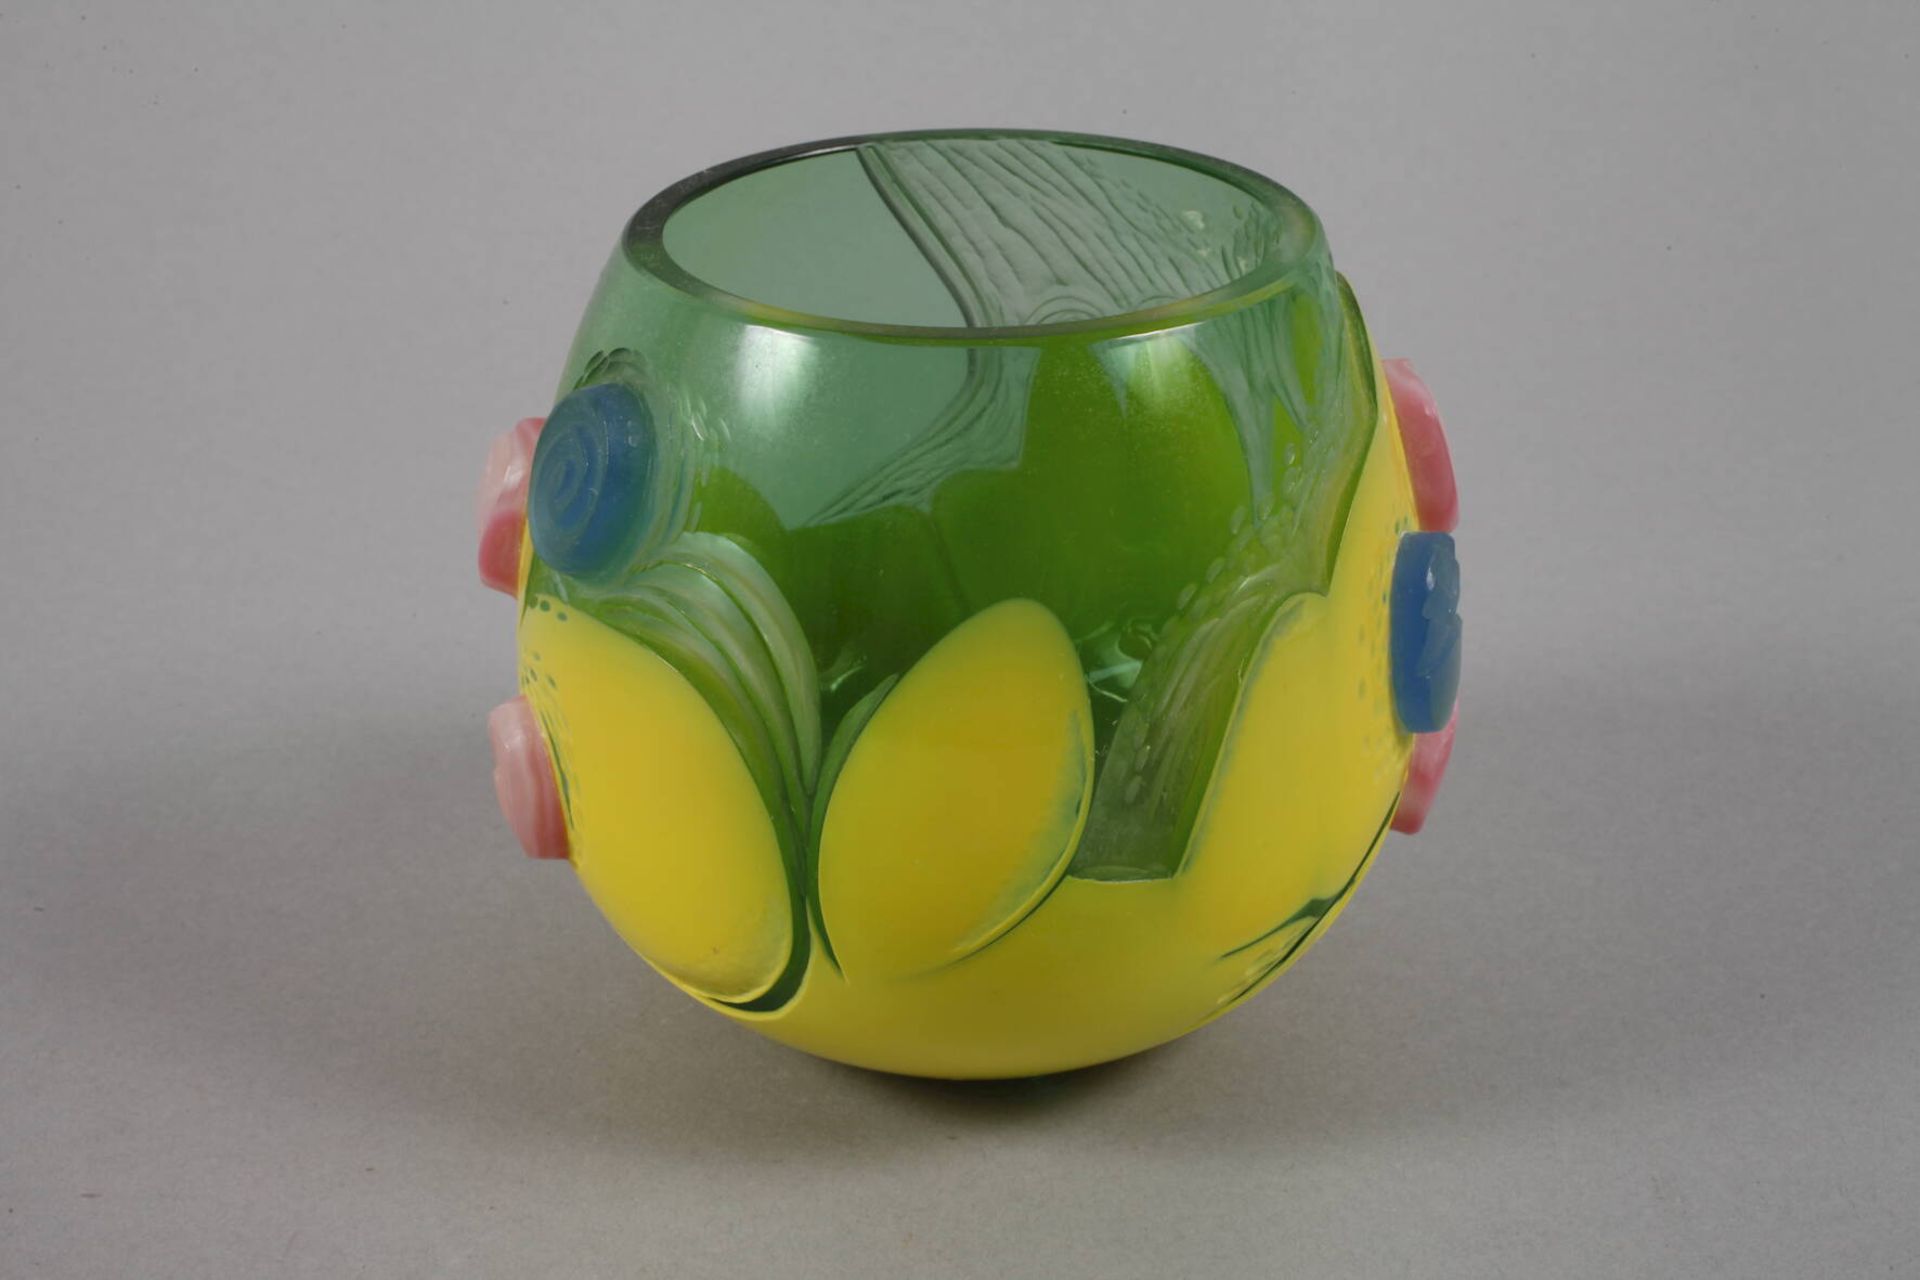 Vase Studioglasdatiert 2000, Herstellermonogramm JV., farbloses Glas, grün und gelb überfangen, - Bild 4 aus 5